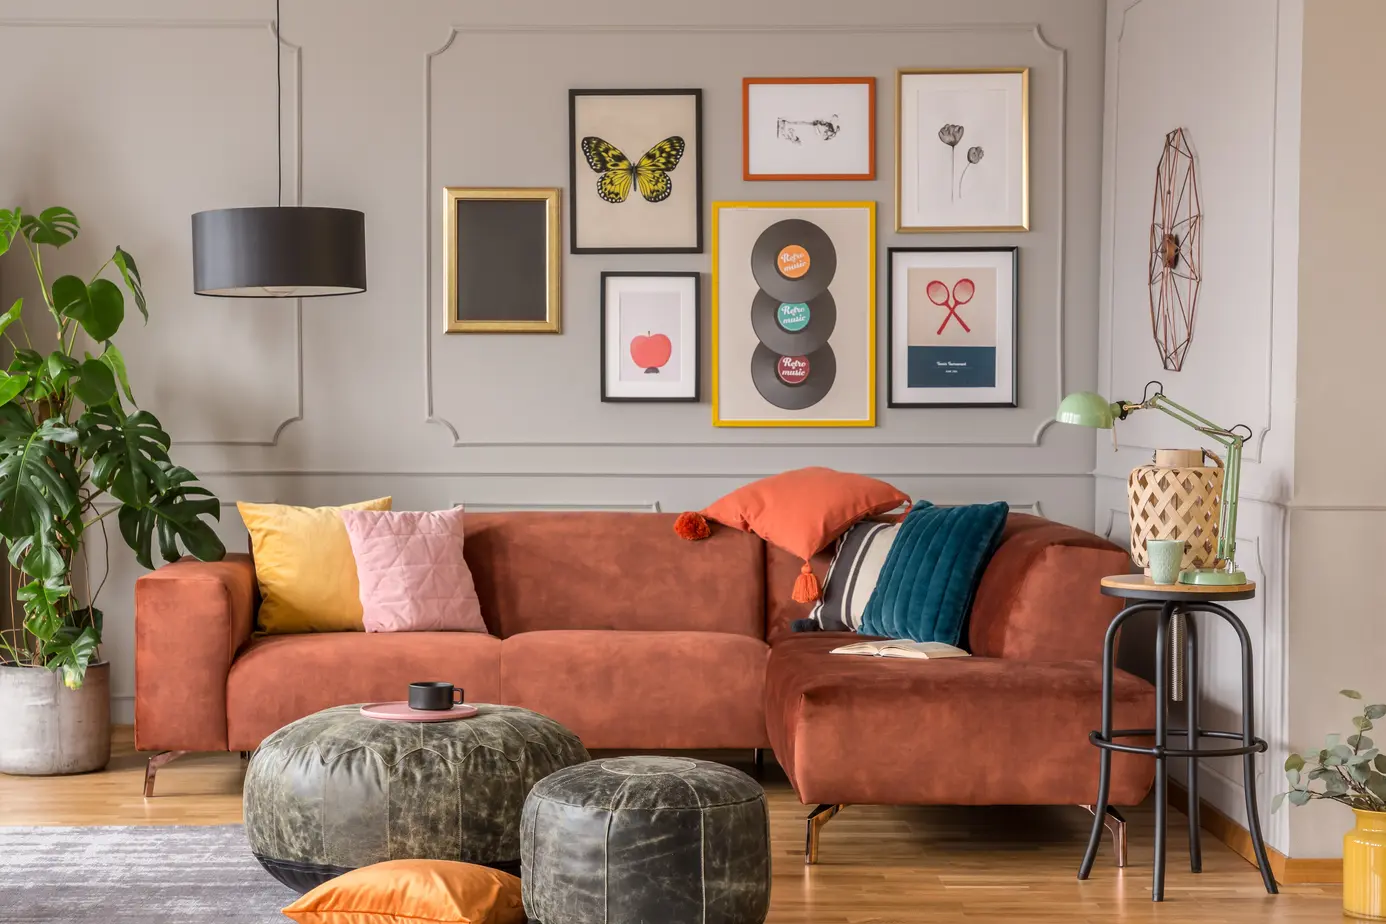 Salon w kolorze szarym z brązową kanapą, styl eklektyczny. Element charakterystyczny: brązowa kanapa. Kolor dopełniający brązowy.